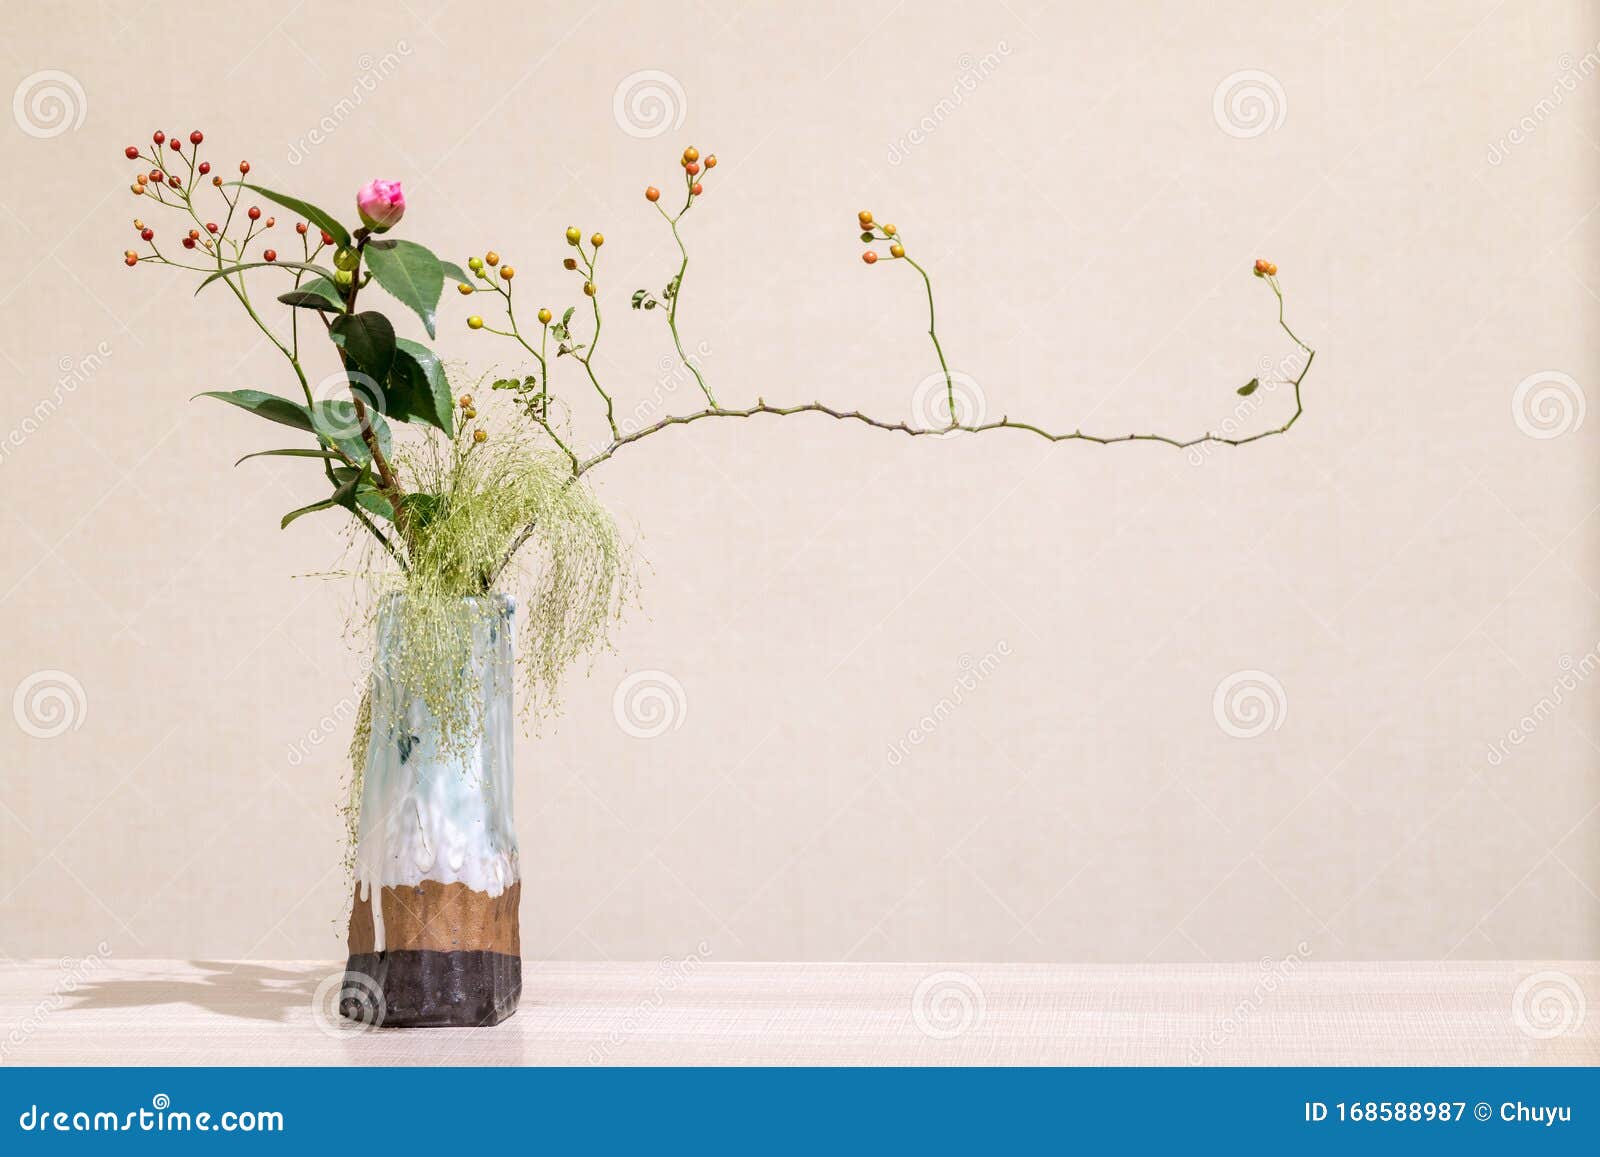 oriental style flower arrangement